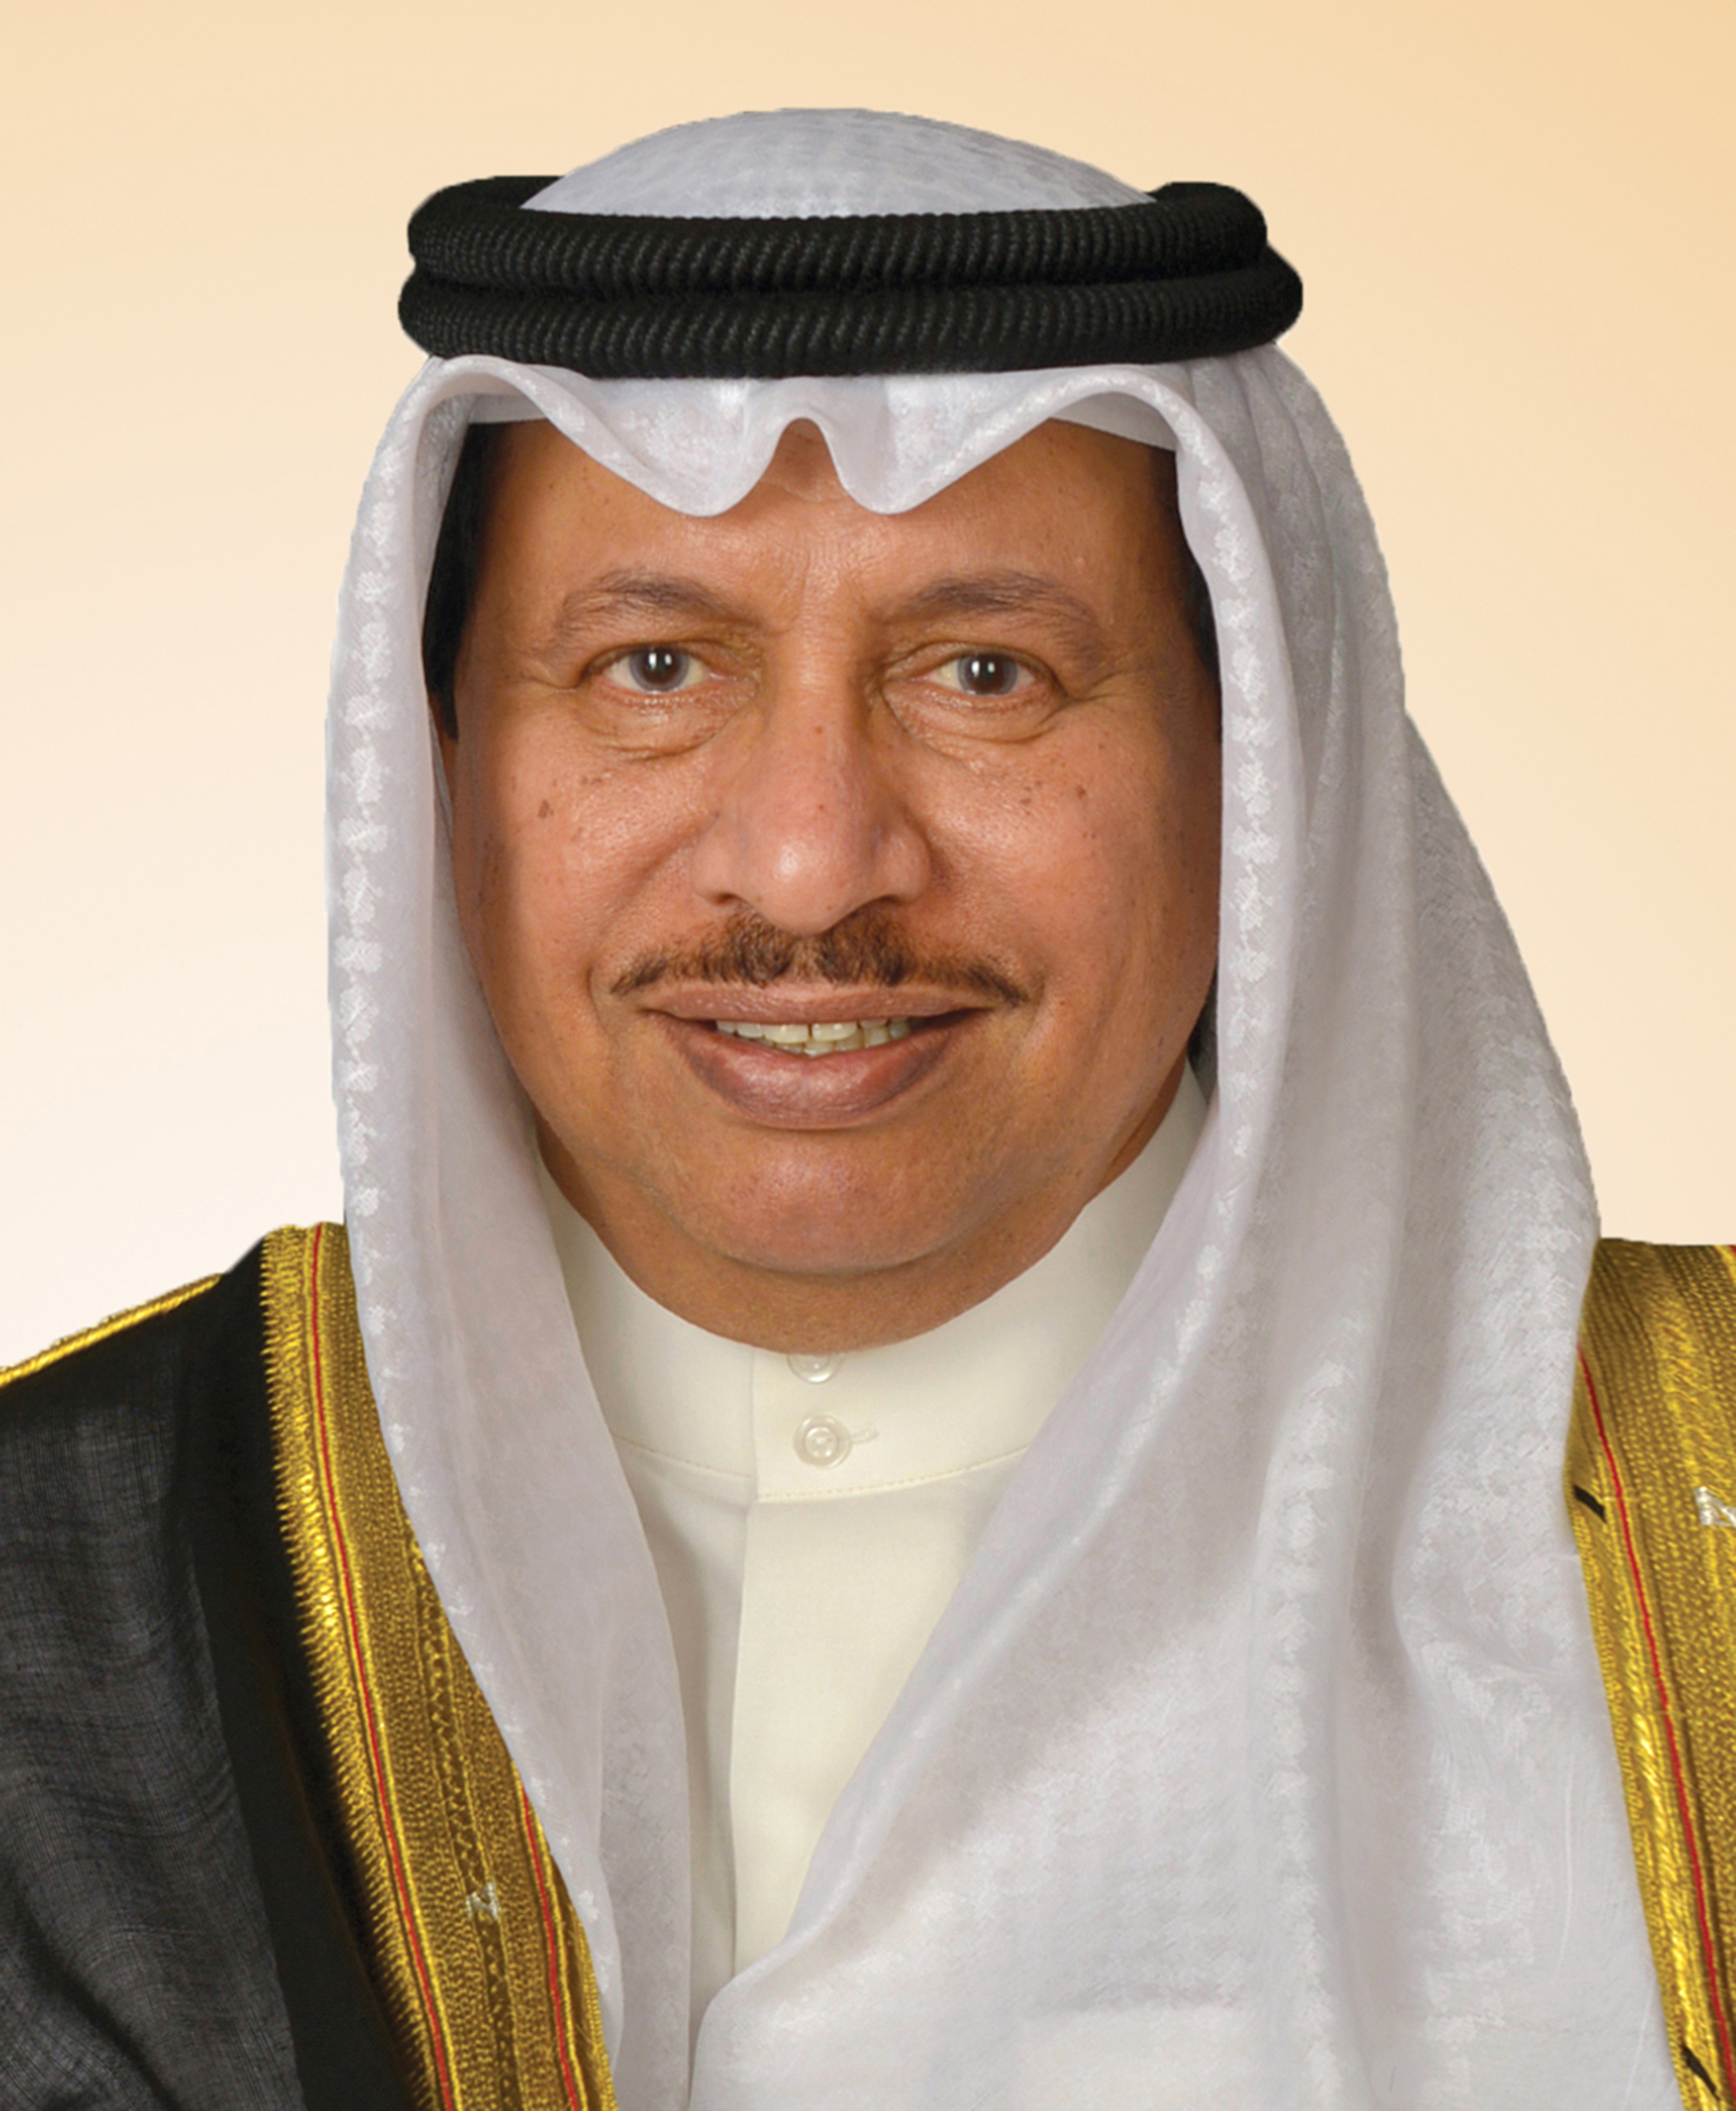 His Highness the Prime Minister Sheikh Jaber Al-Mubarak Al-Hamad Al-Sabah